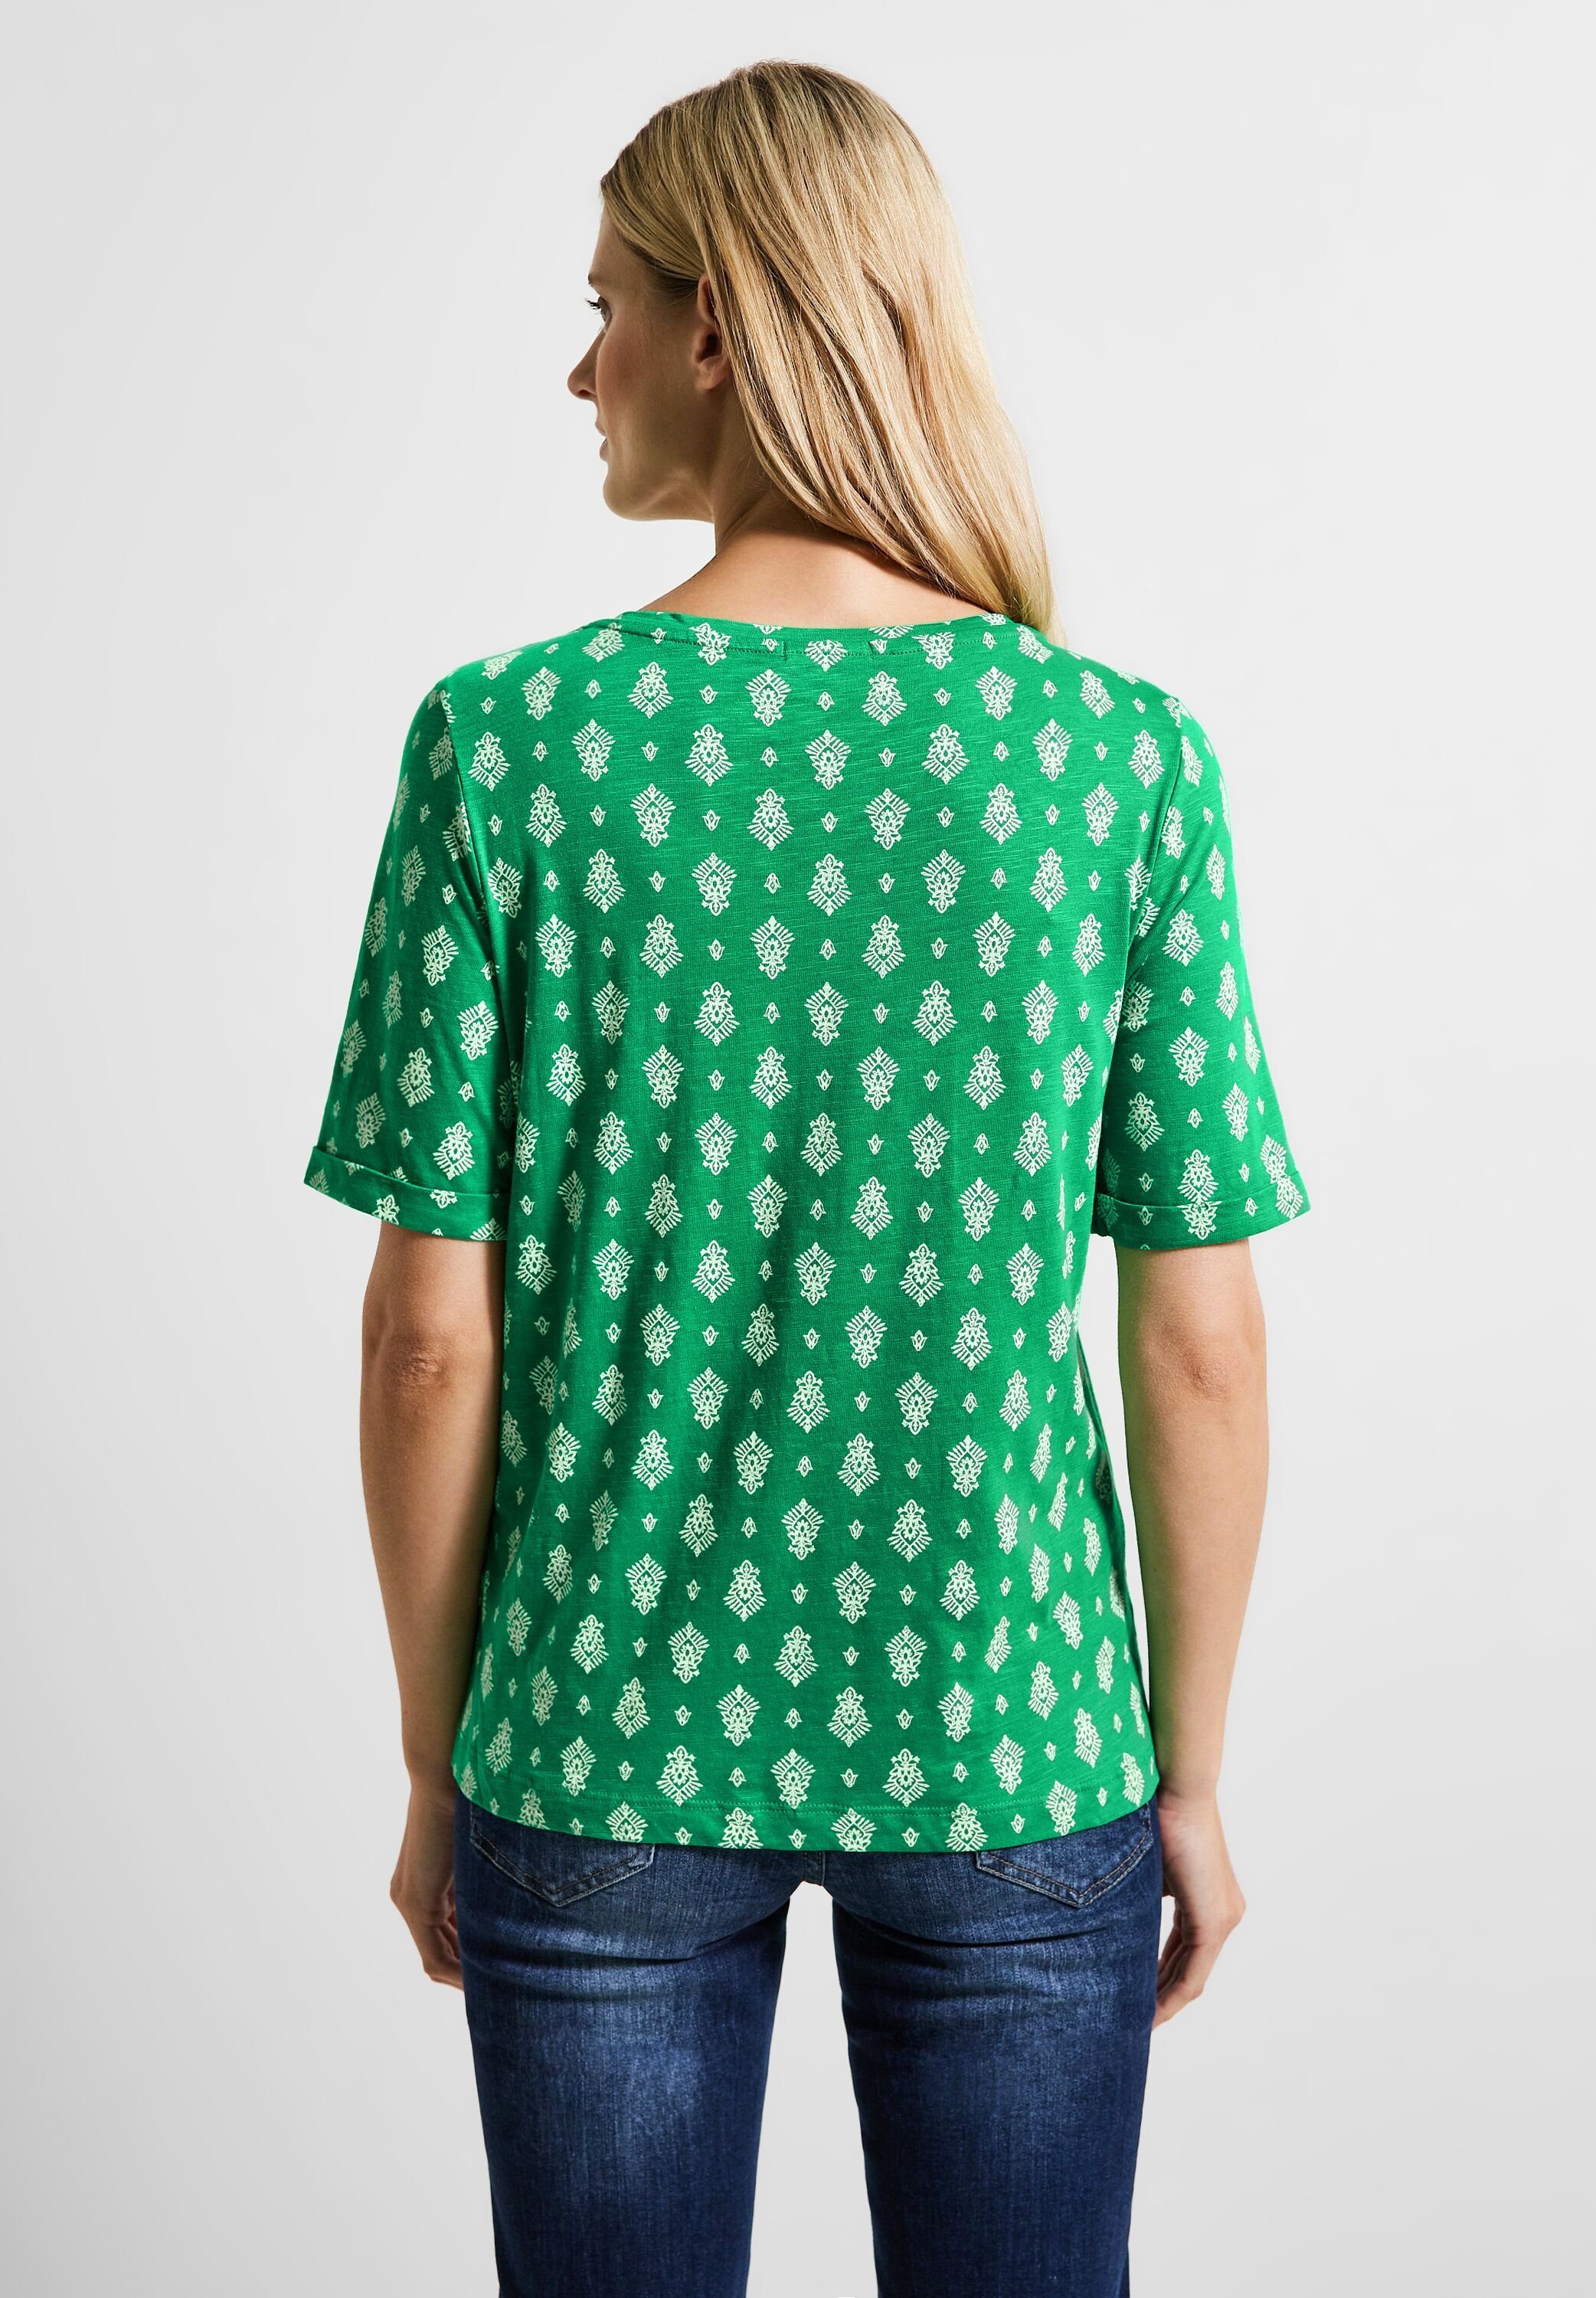 softem aus Cecil T-Shirt green fresh Materialmix